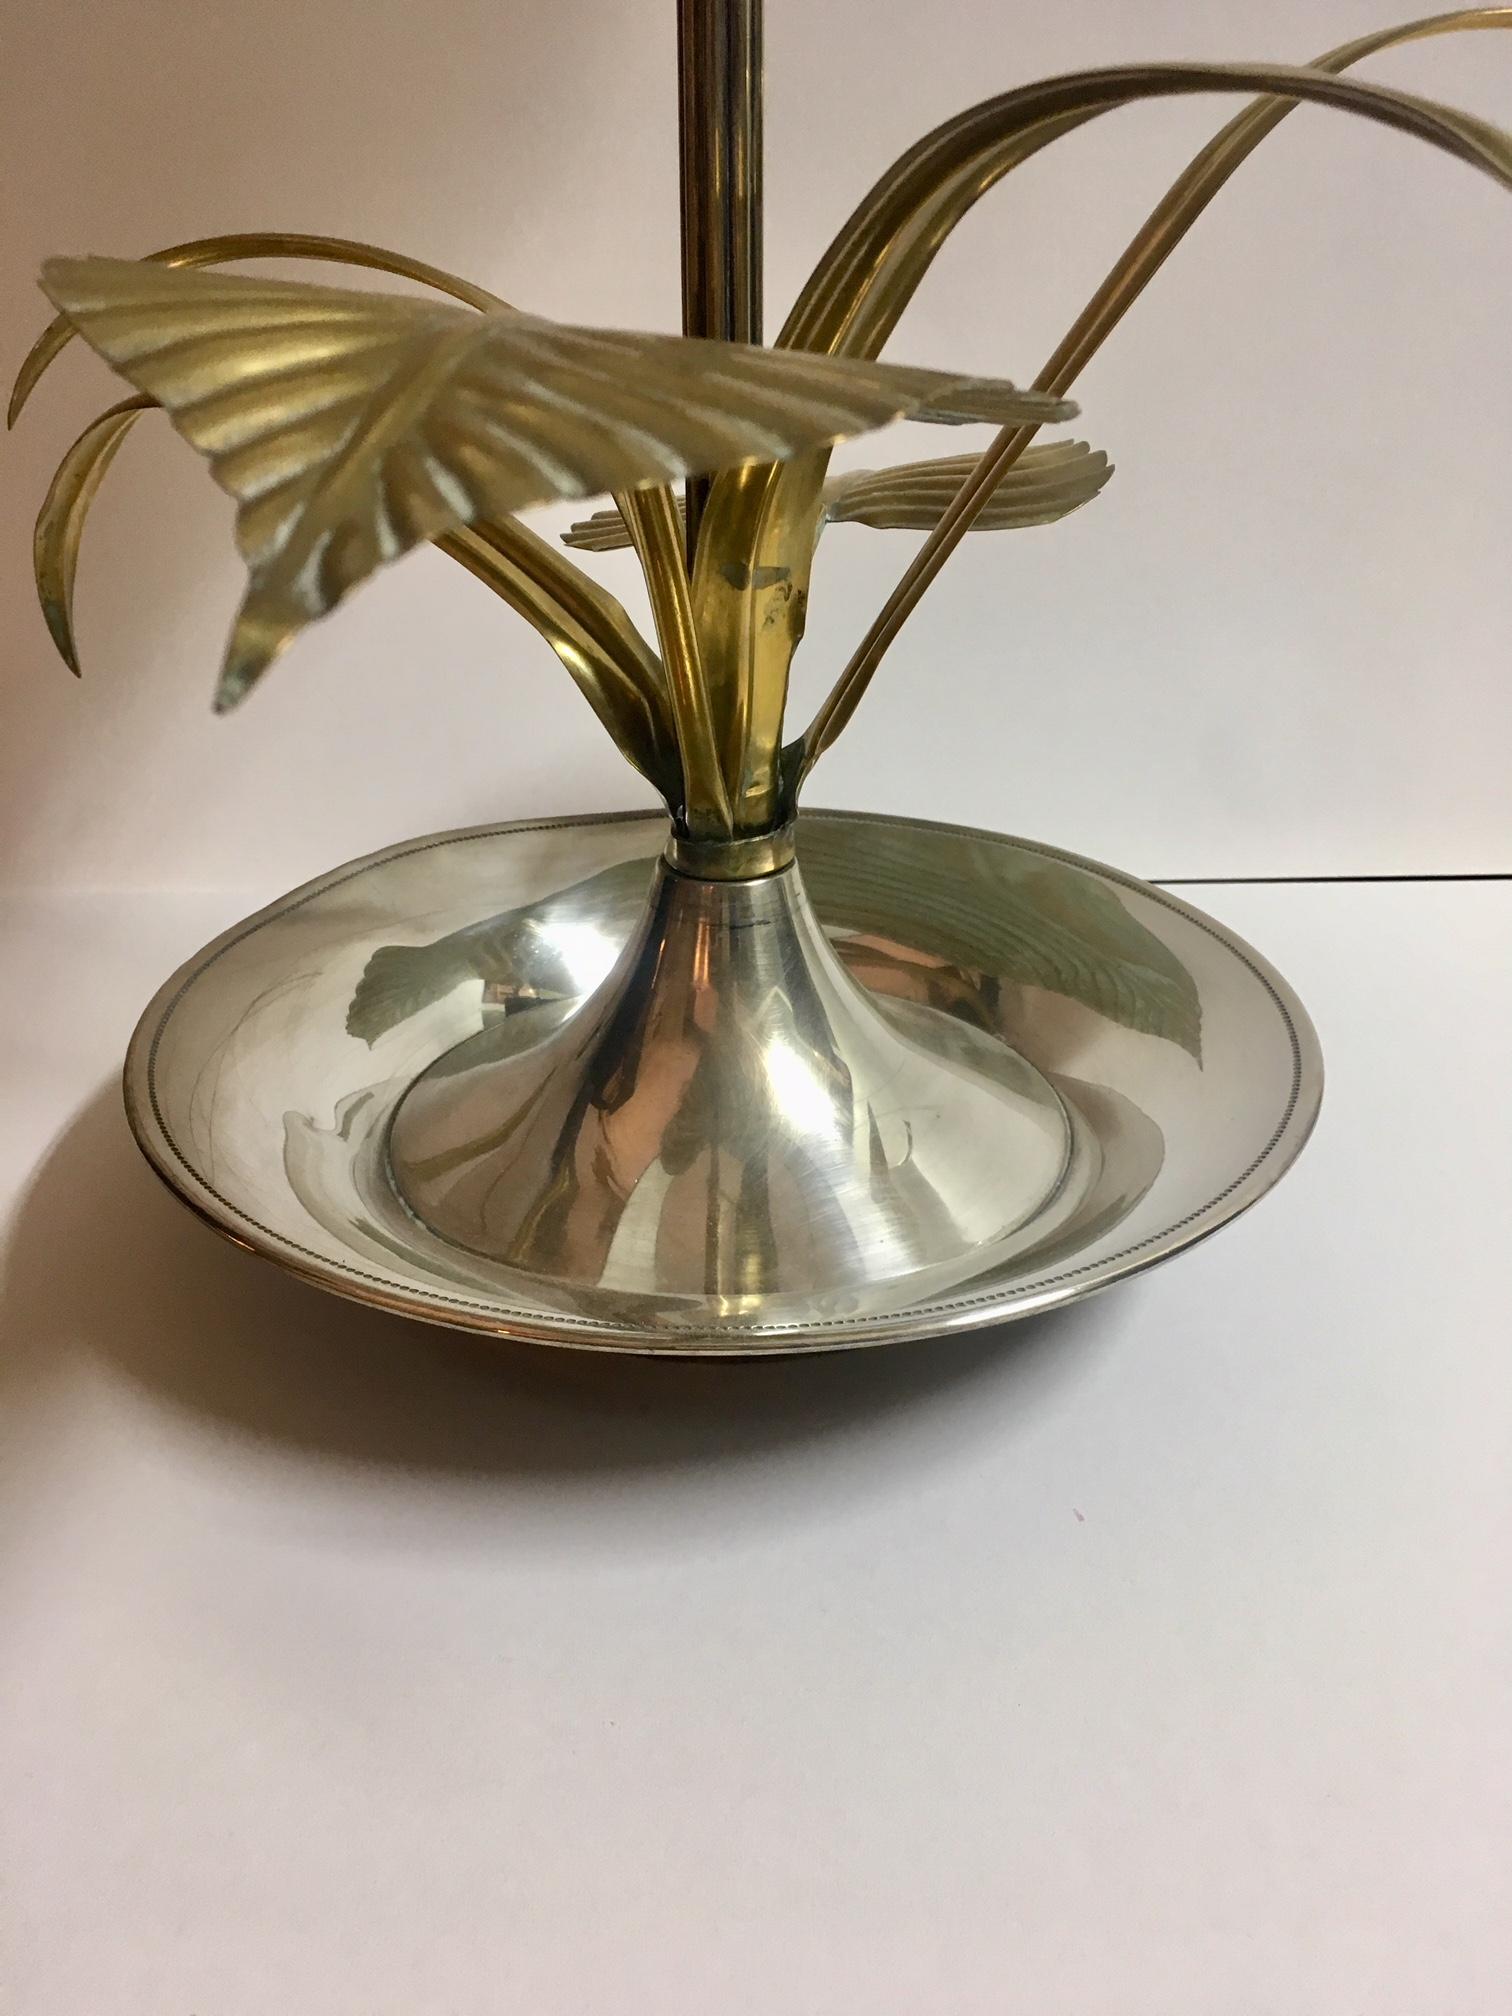 Blumentischlampe aus hochwertigem Messing mit Darstellung einer Lotusblume und Blattwerk, renoviert und neue elektrische Verkabelung, mit zwei Lichtpunkten, Lampenschirm aus Seide und Samt.